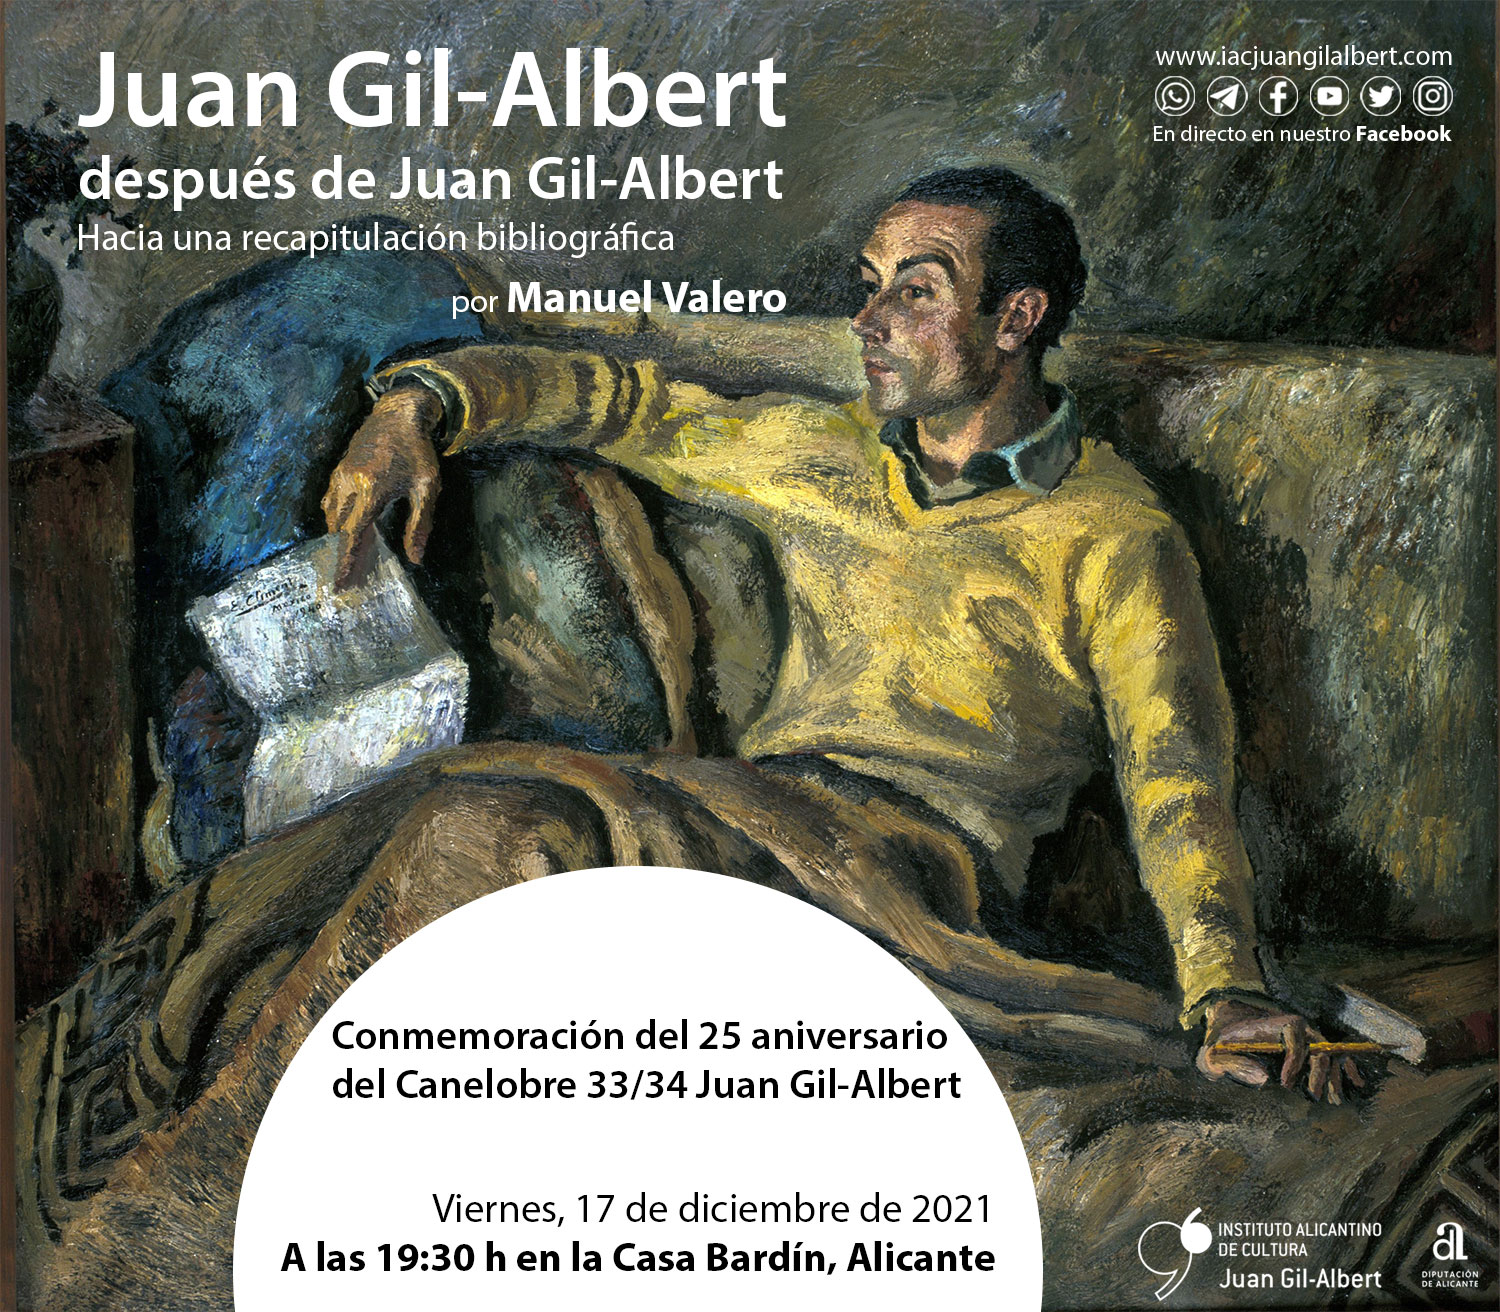 Manuel Valero actualiza el legado de Juan Gil-Albert al cumplirse el 25 aniversario de su Canelobre honorífico